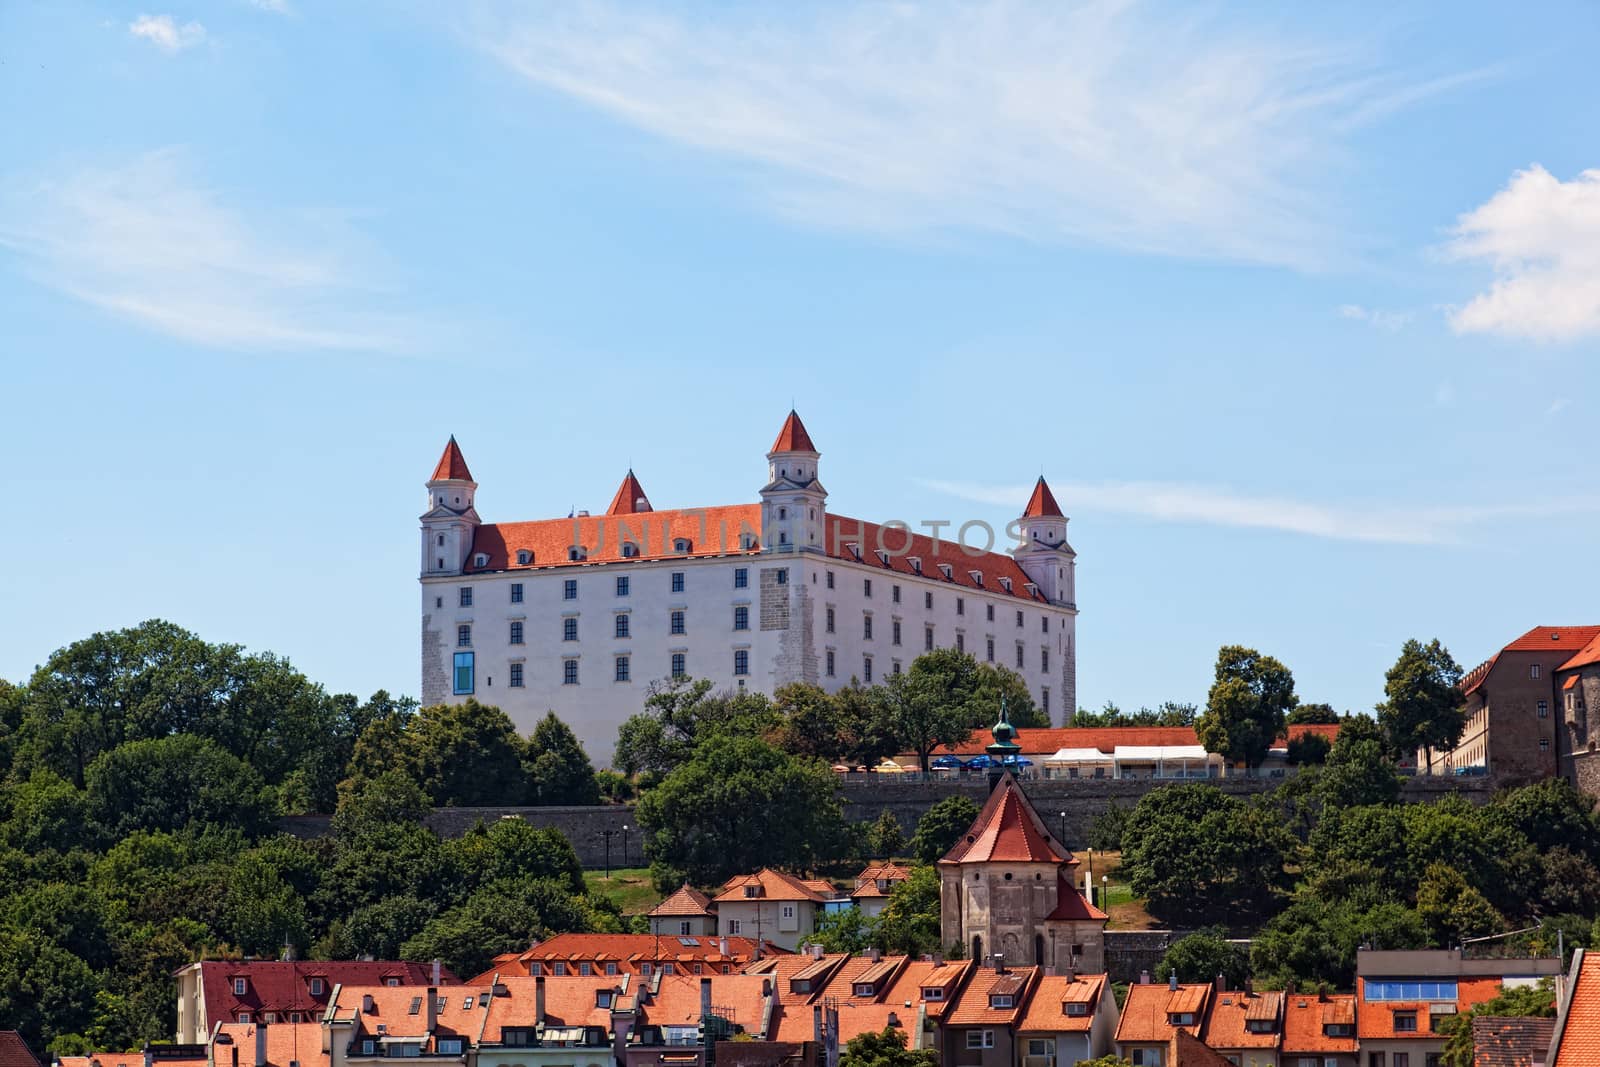 Medieval castle on the hill against the sky, Bratislava, Slovakia by elena_shchipkova